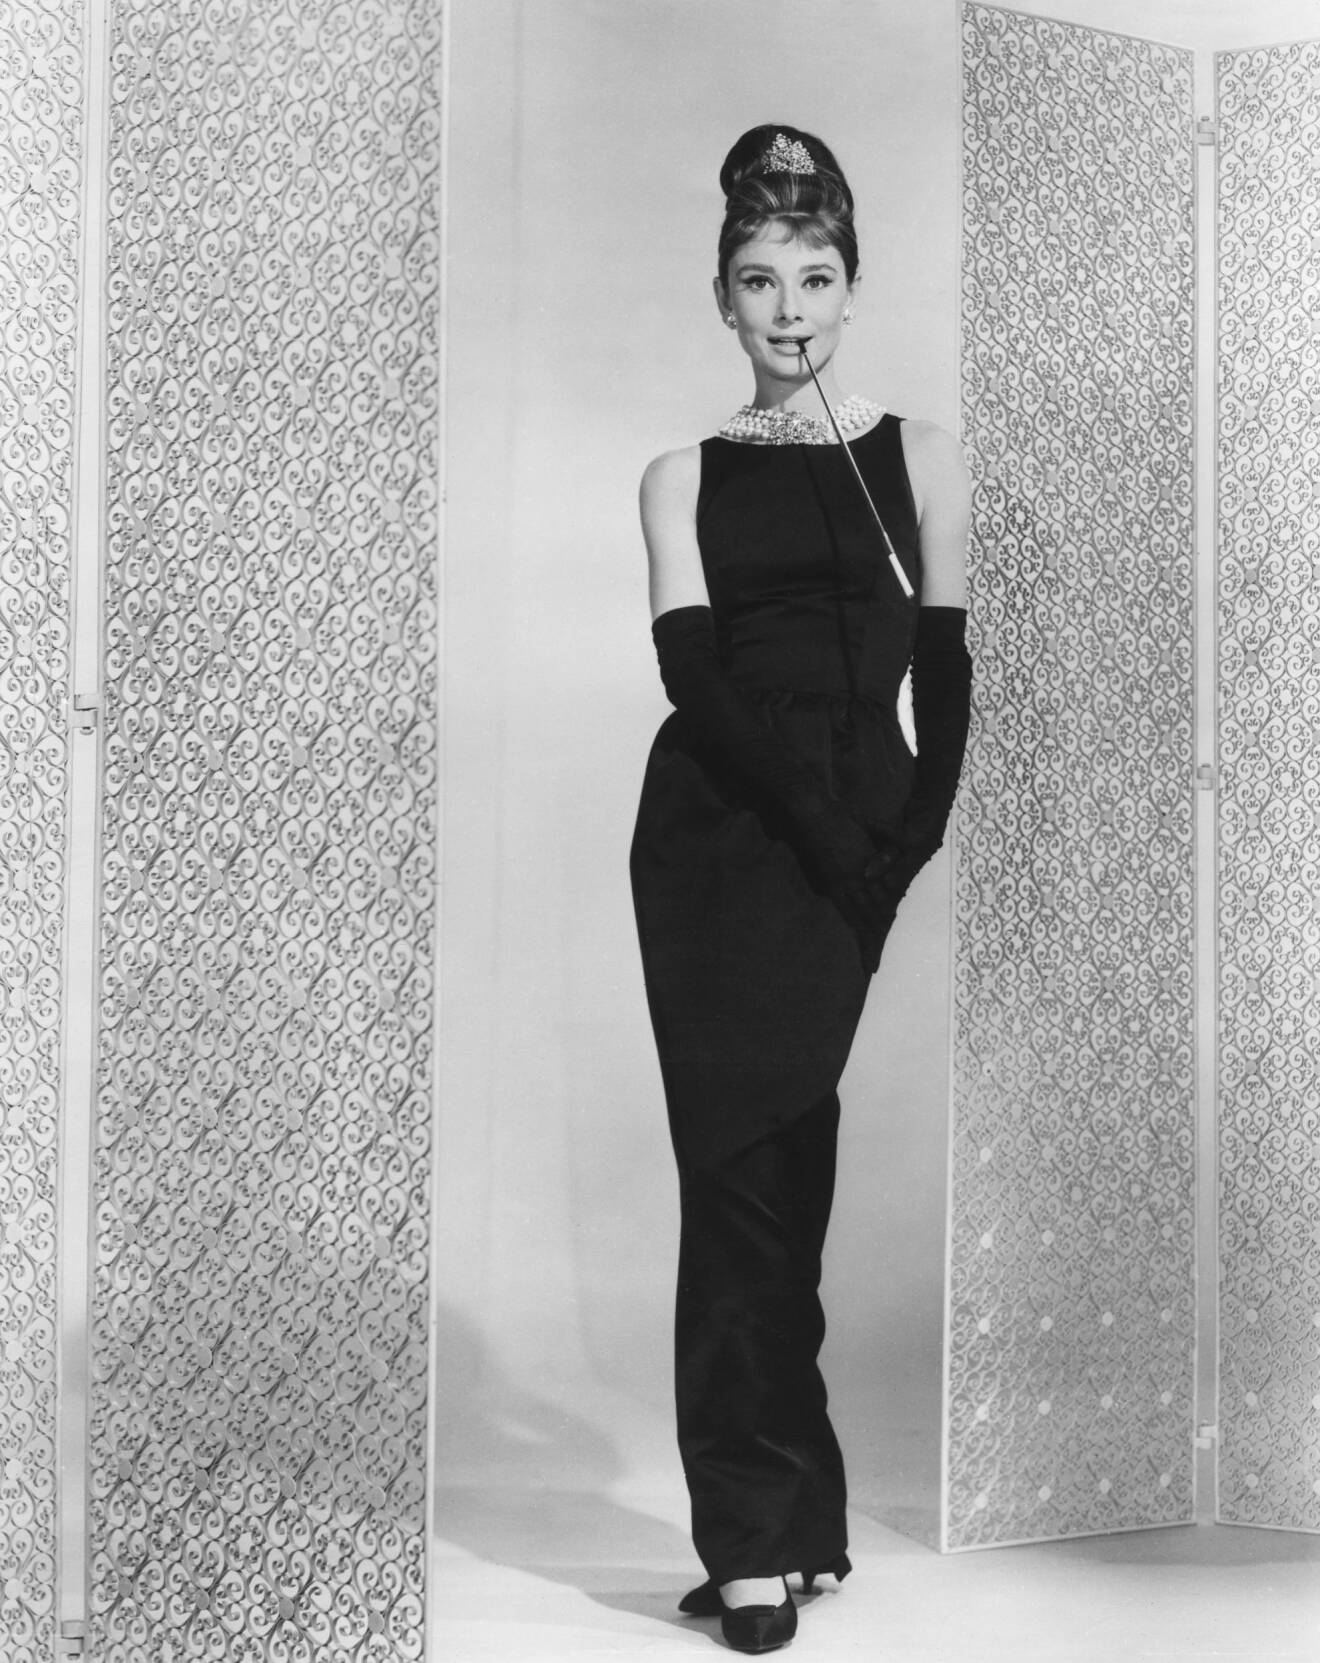 Audrey Hepburn i Breakfast at Tiffanys i ikonisk svart, fodralklänning och stort halsband runt halsen.